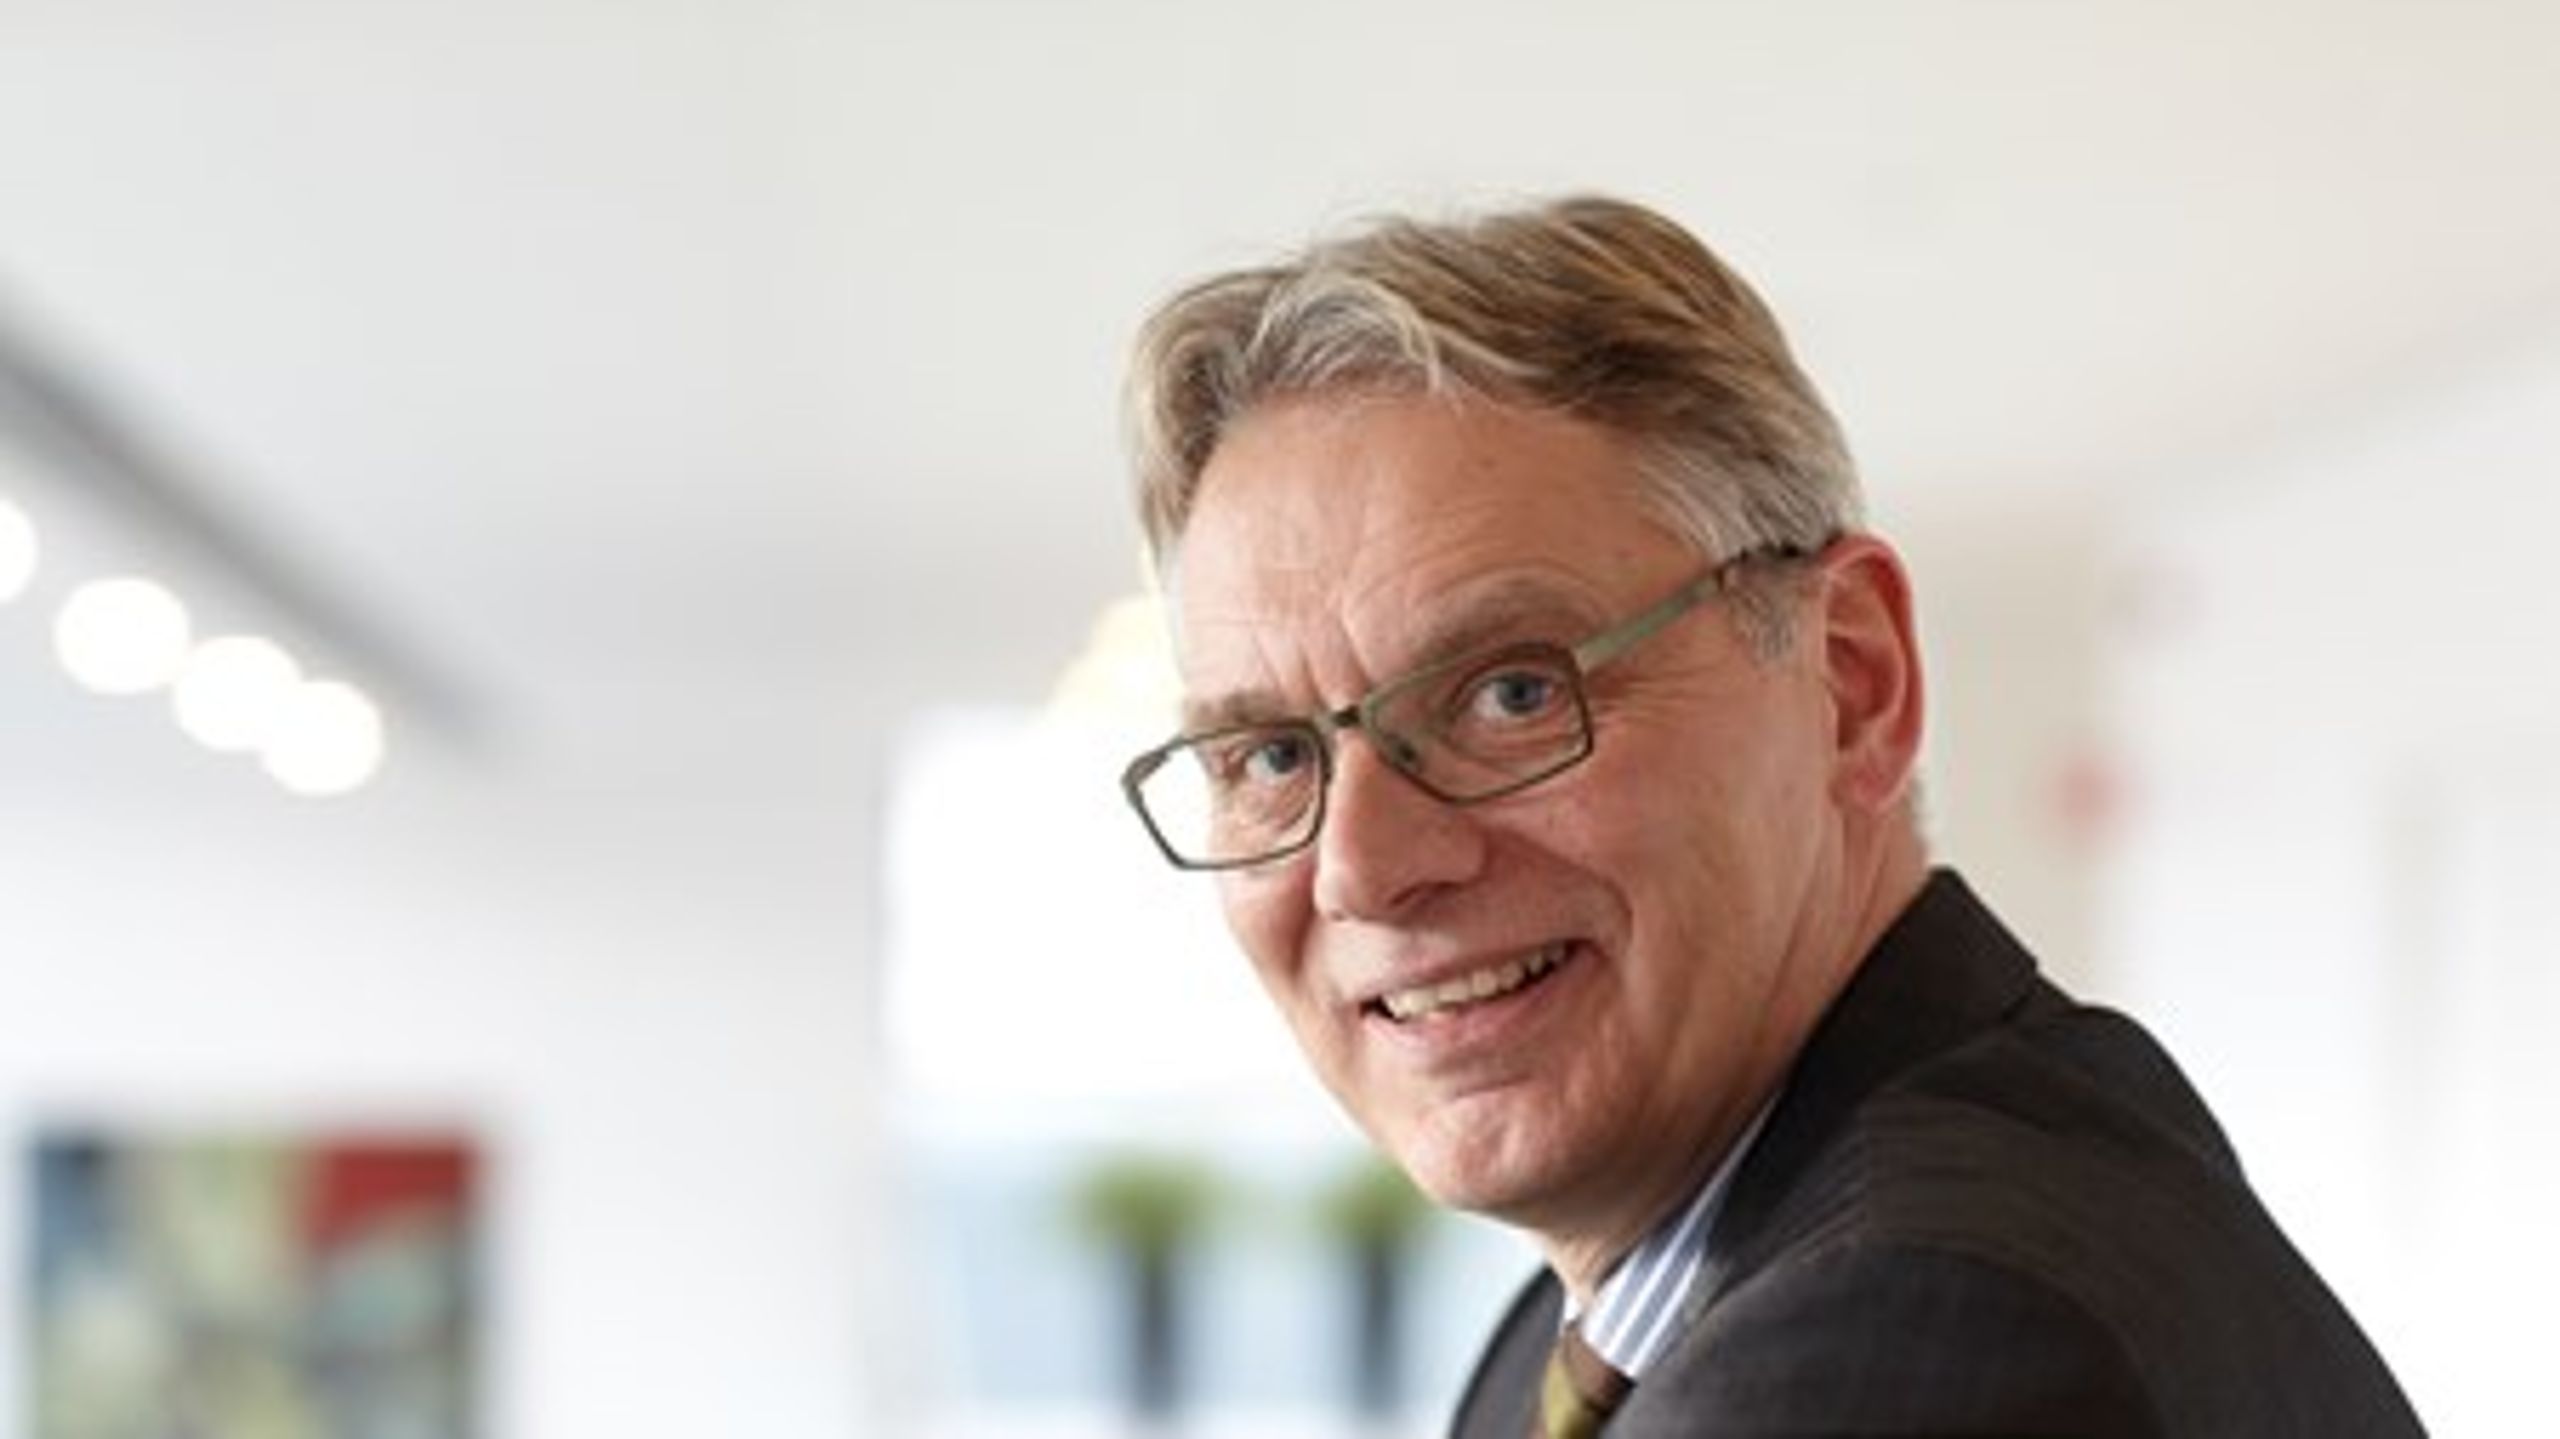 Direktør i Danmarks Innovationsfond Peter Høngaard Andersen afviser kritik af fondens håndtering af erhvervsPhD'er . Han forsikrer om, at der arbejdes med at forbedre erhvervsPhDen, så den bliver mindre bureaukratisk og bedre tilpasset de enkelte projekter. <br>